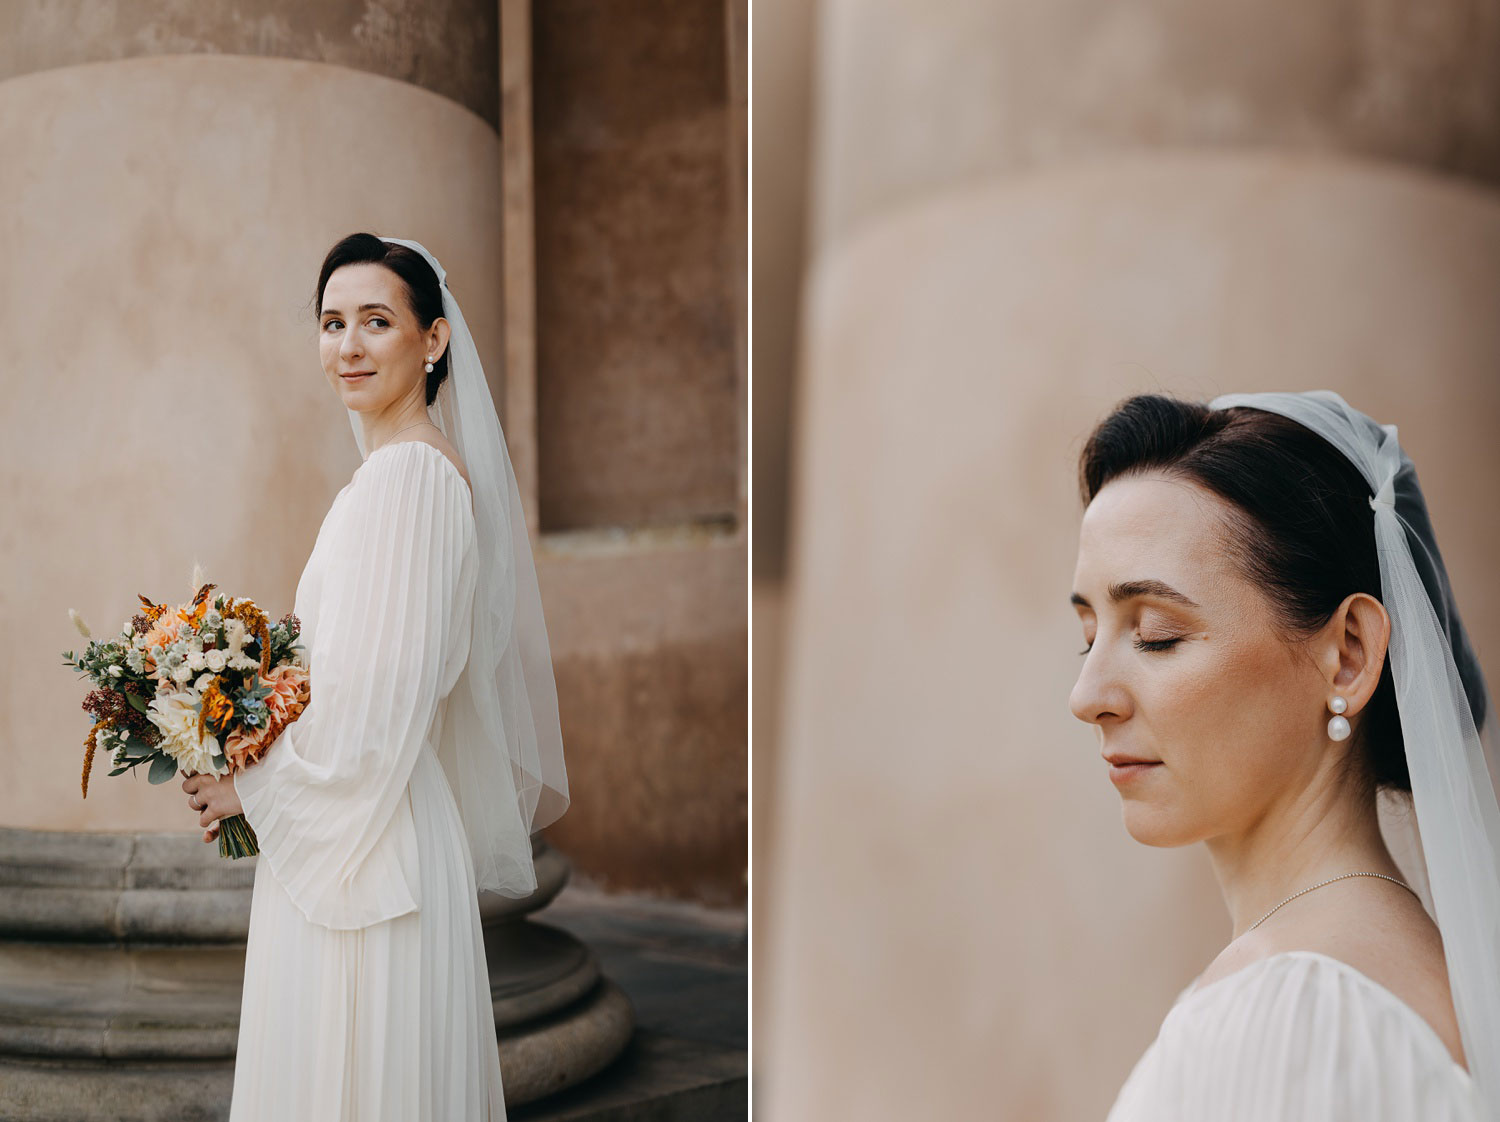 Bride's Elegant Wedding Gown in Copenhagen City Hall